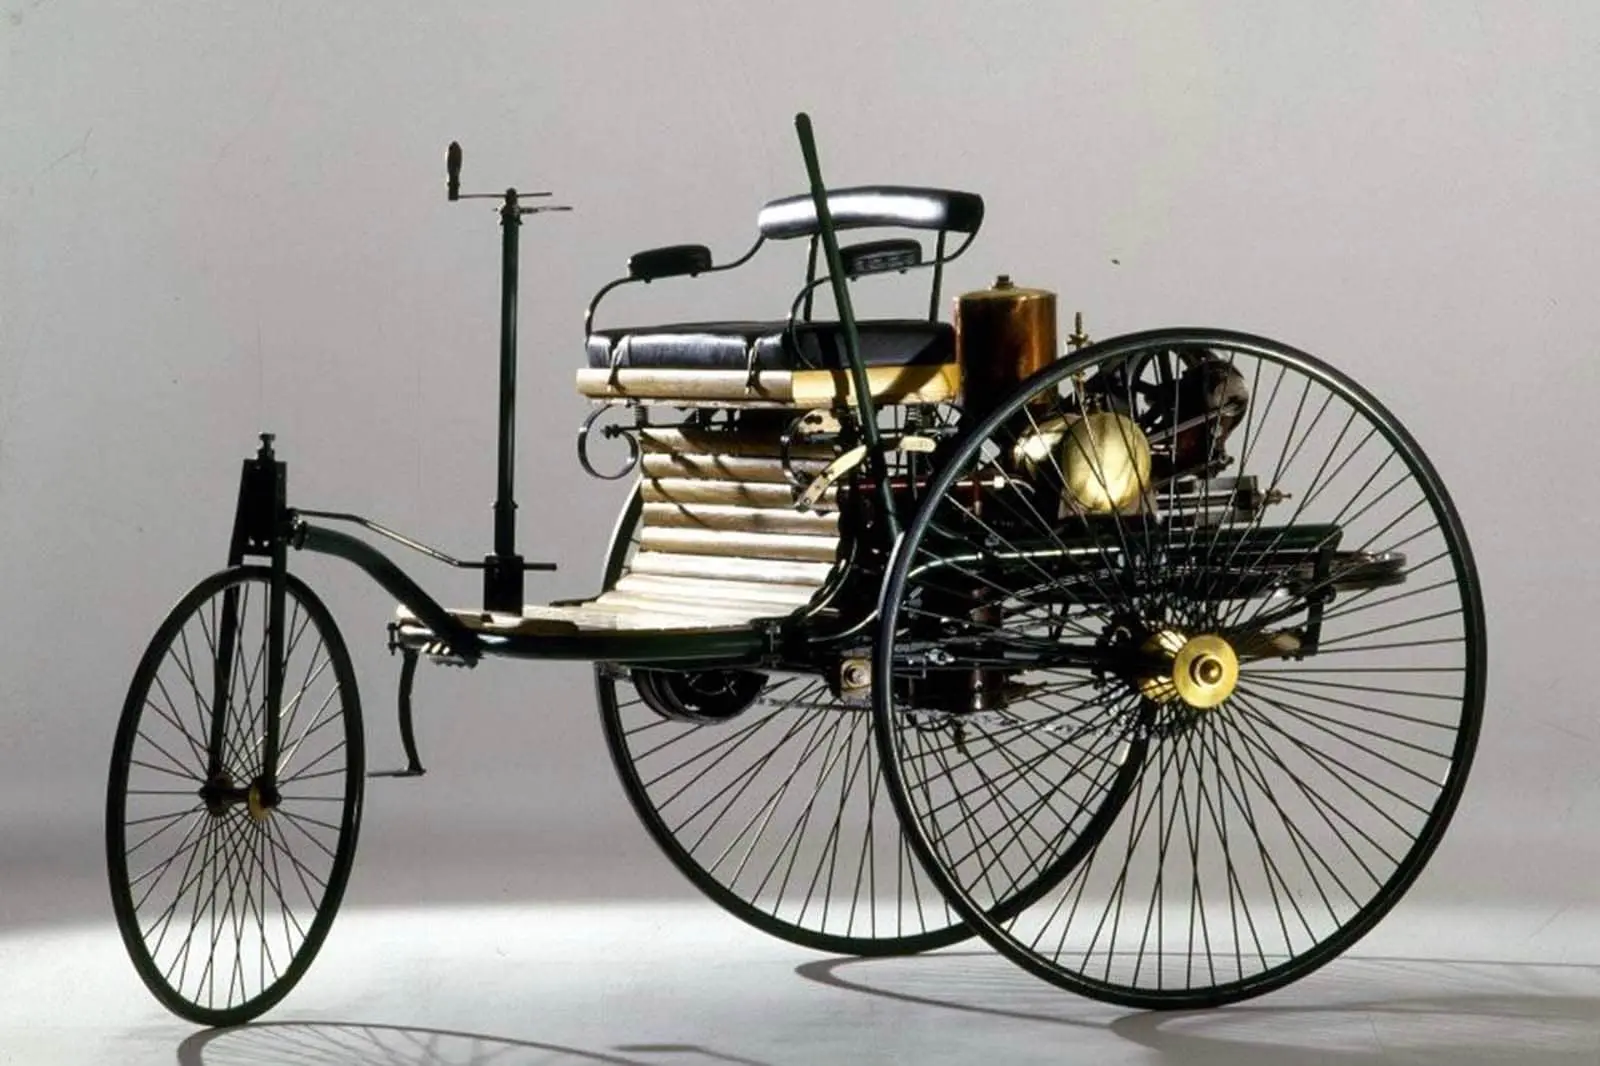 Automóvil de patente Benz de 1886